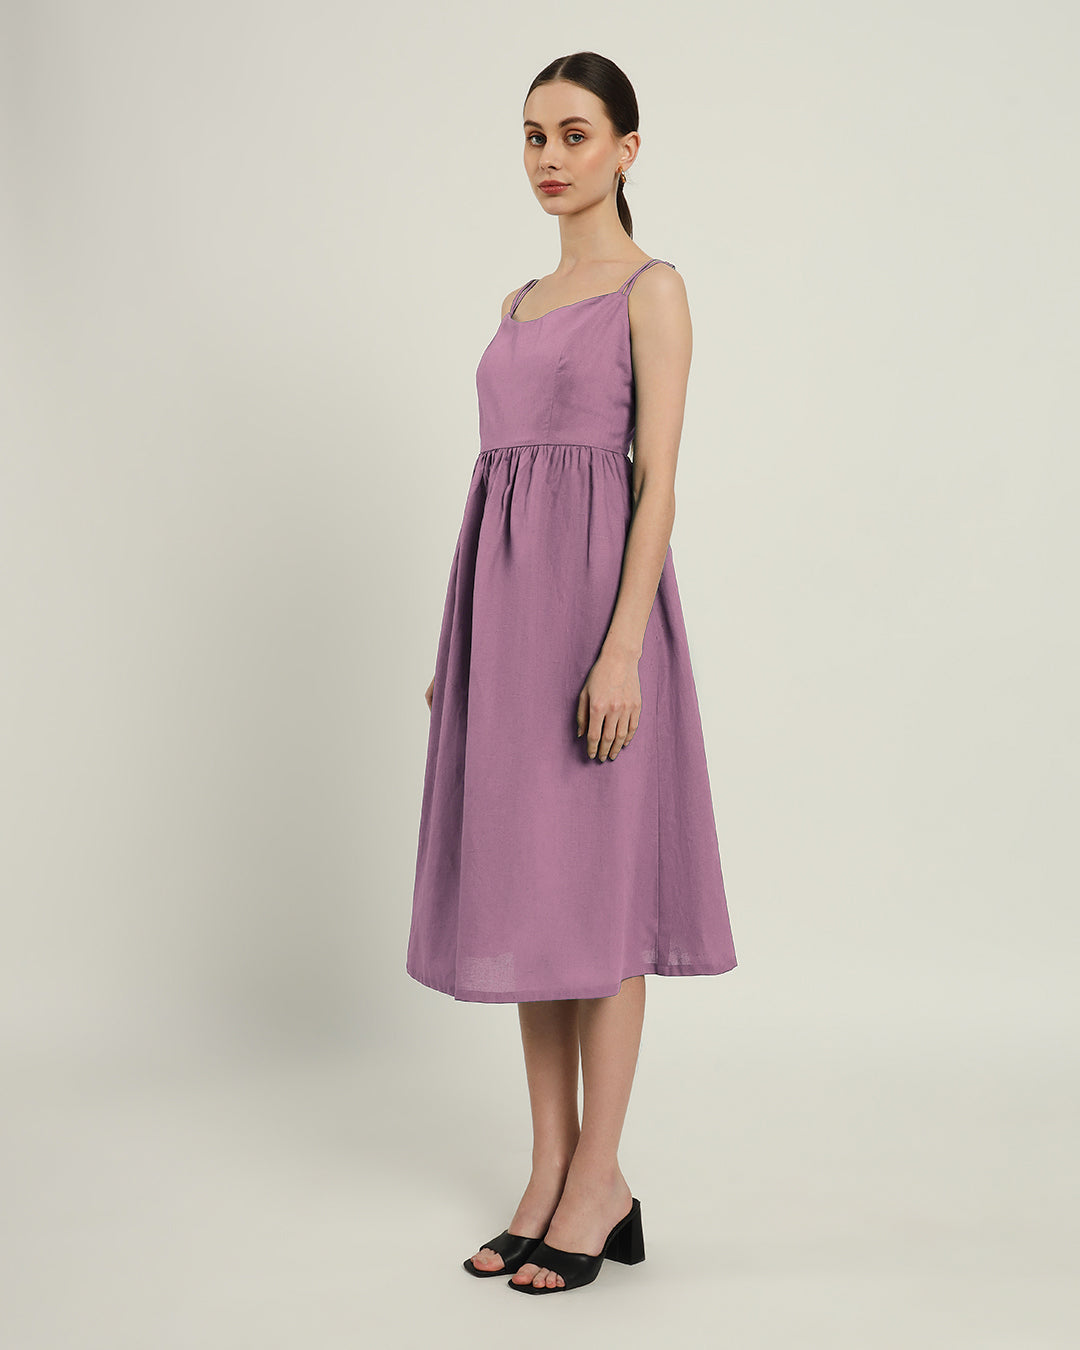 The Haiti Purple Swirl Dress